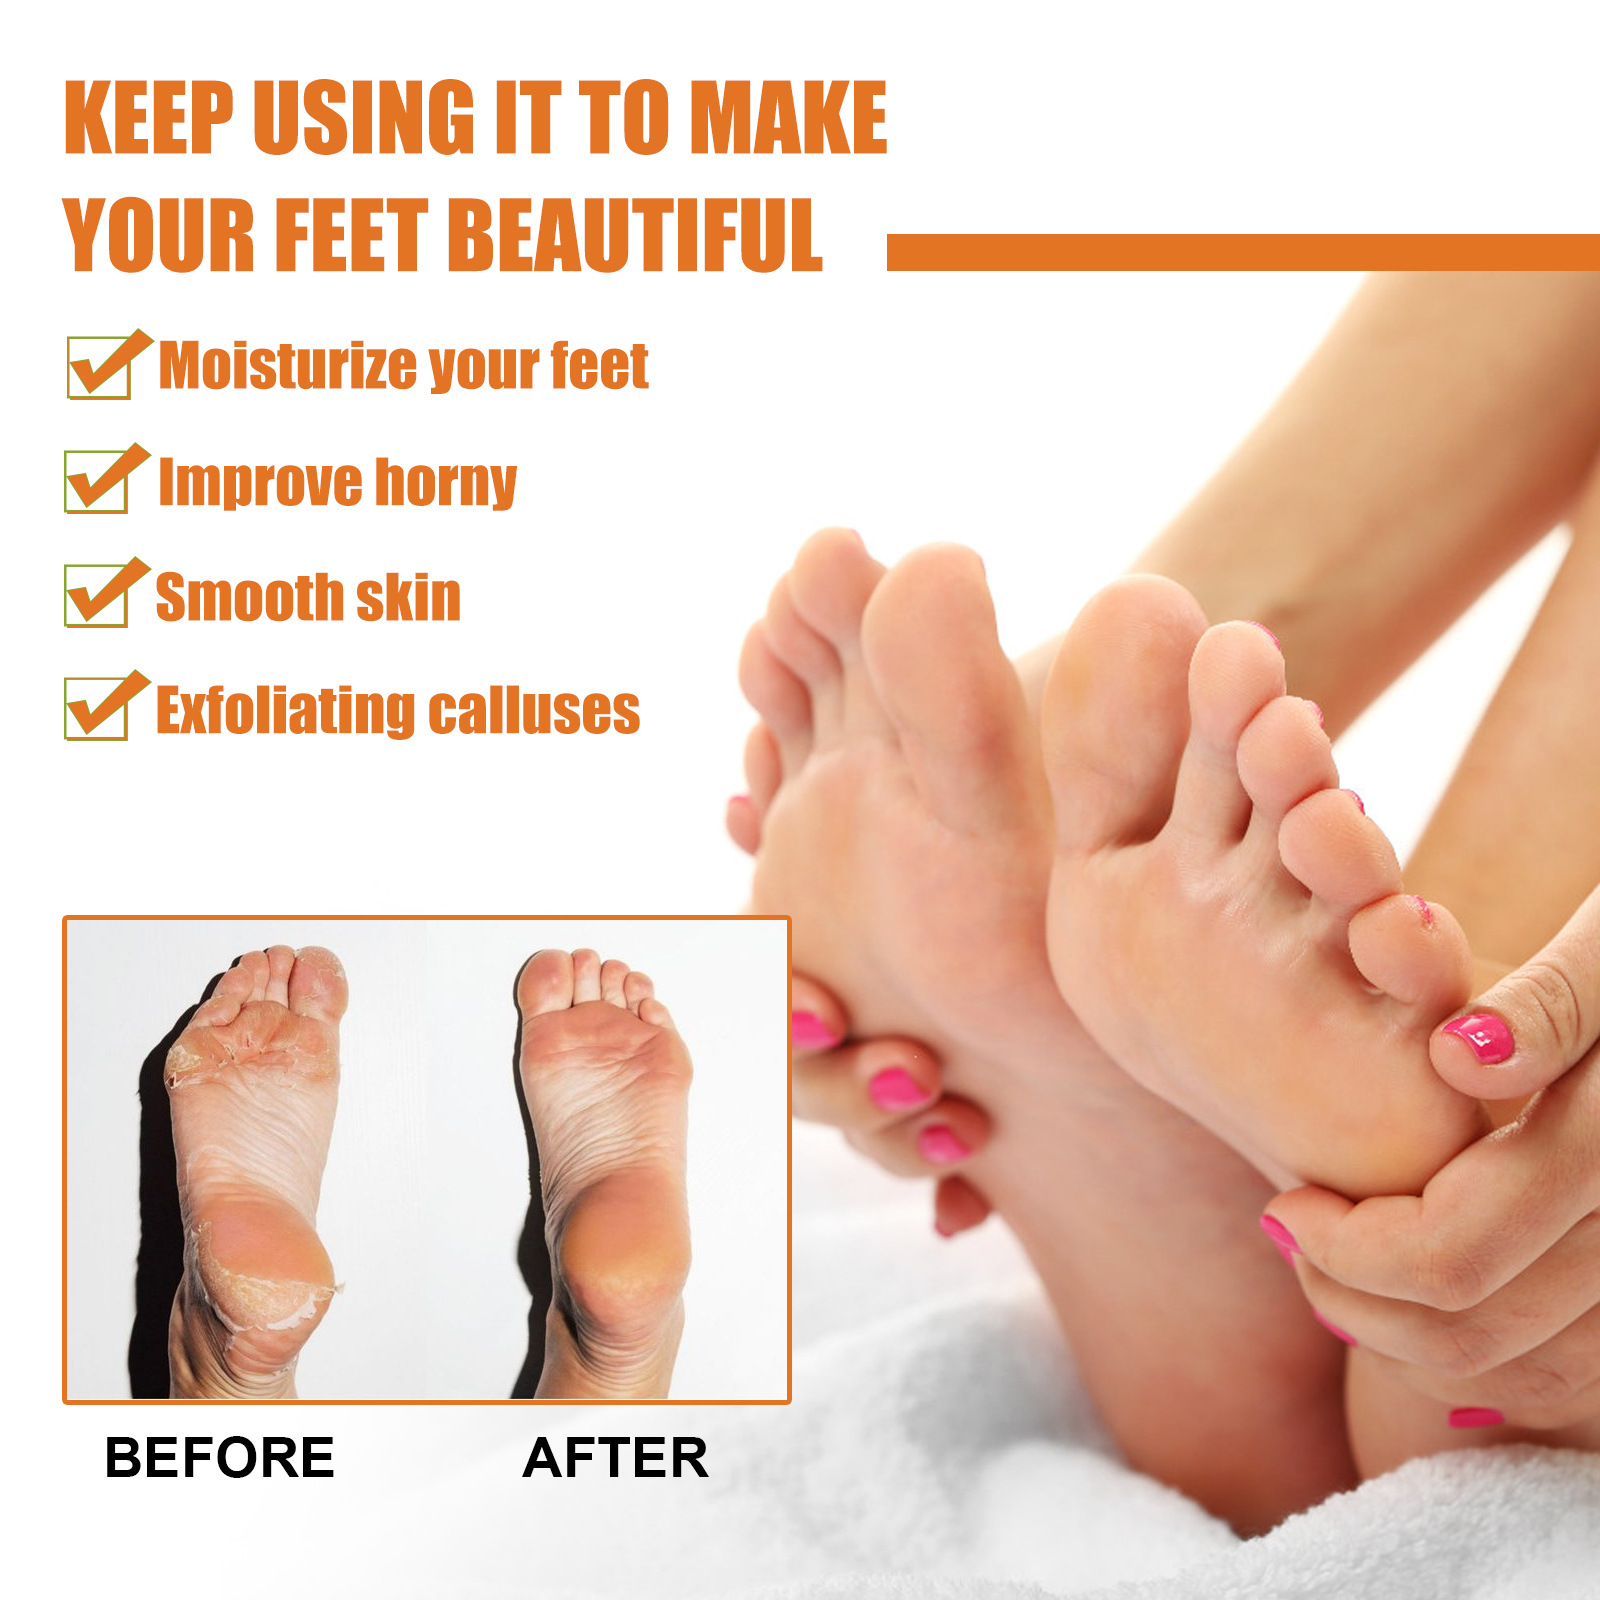 Foot Heel Callus Remover Spray,foot Callus Removal Spray,foot